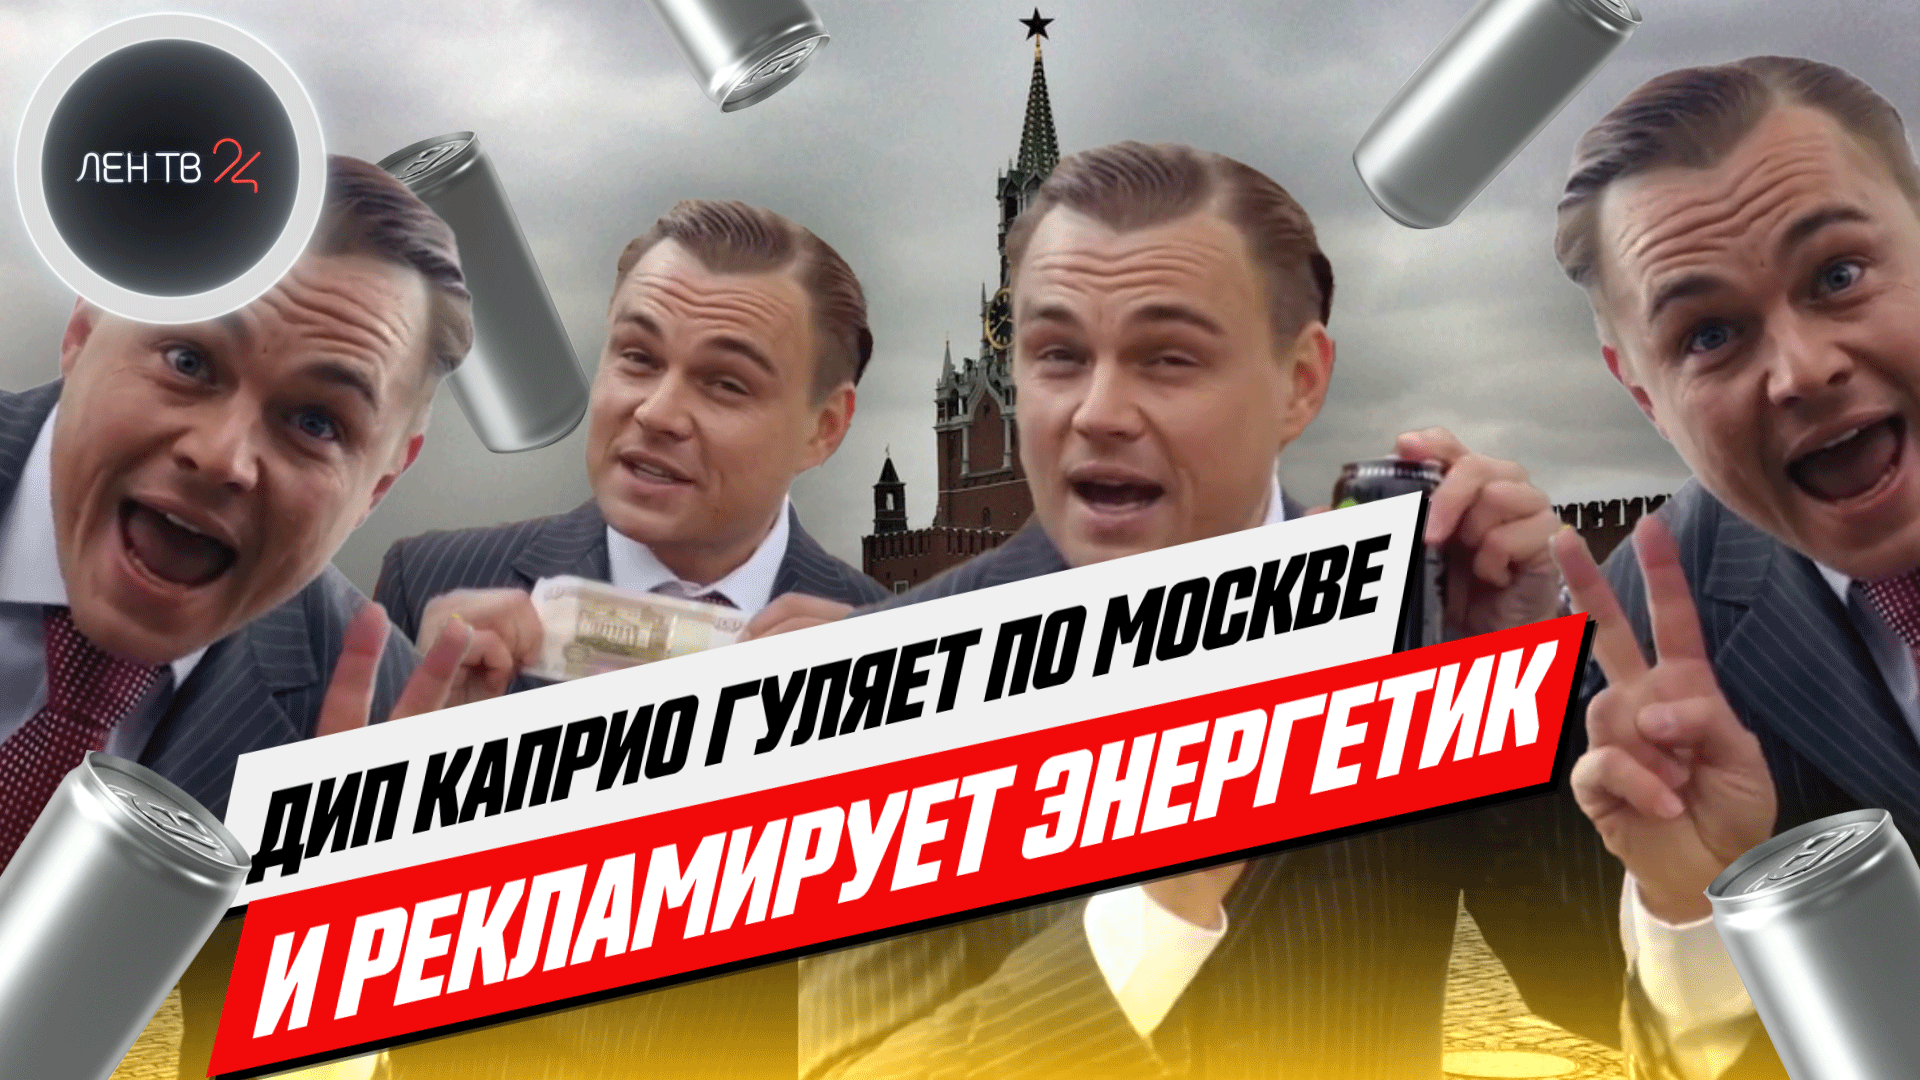 Фейковый Ди Каприо рекламирует в Москве энергетики | DeepCaprio сделали с помощью Deepfake